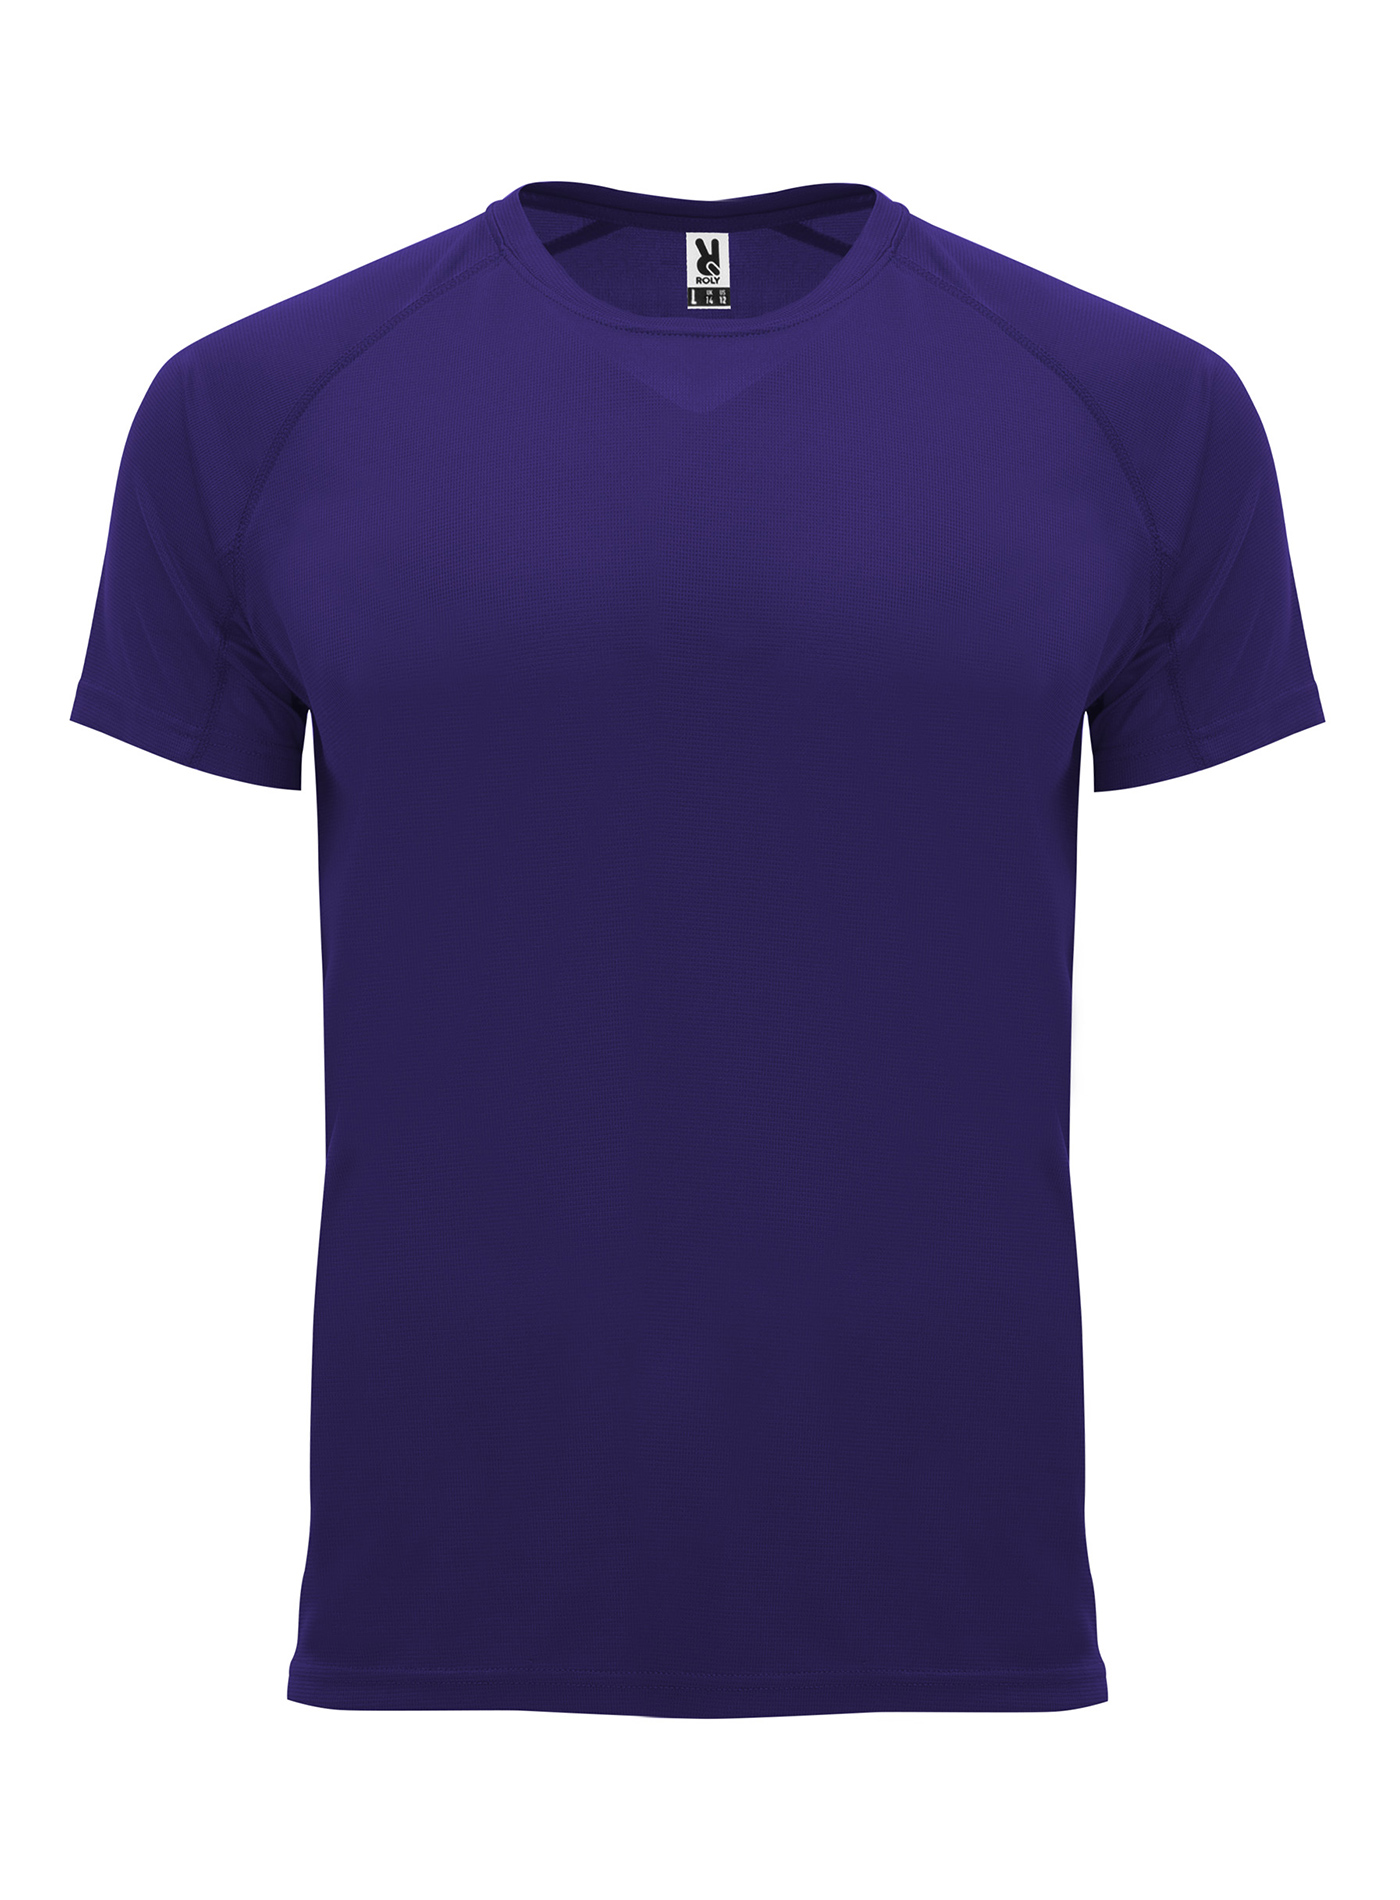 Pánské sportovní tričko Bahrain - Tmavě fialová XL